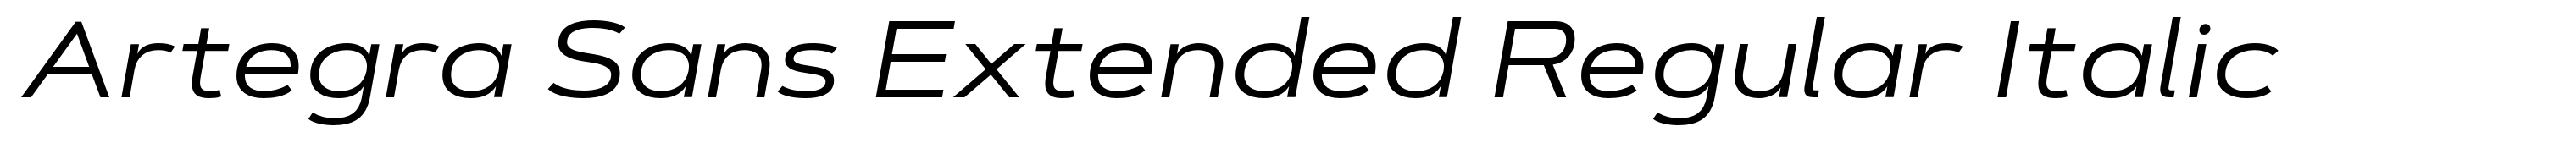 Artegra Sans Extended Regular Italic